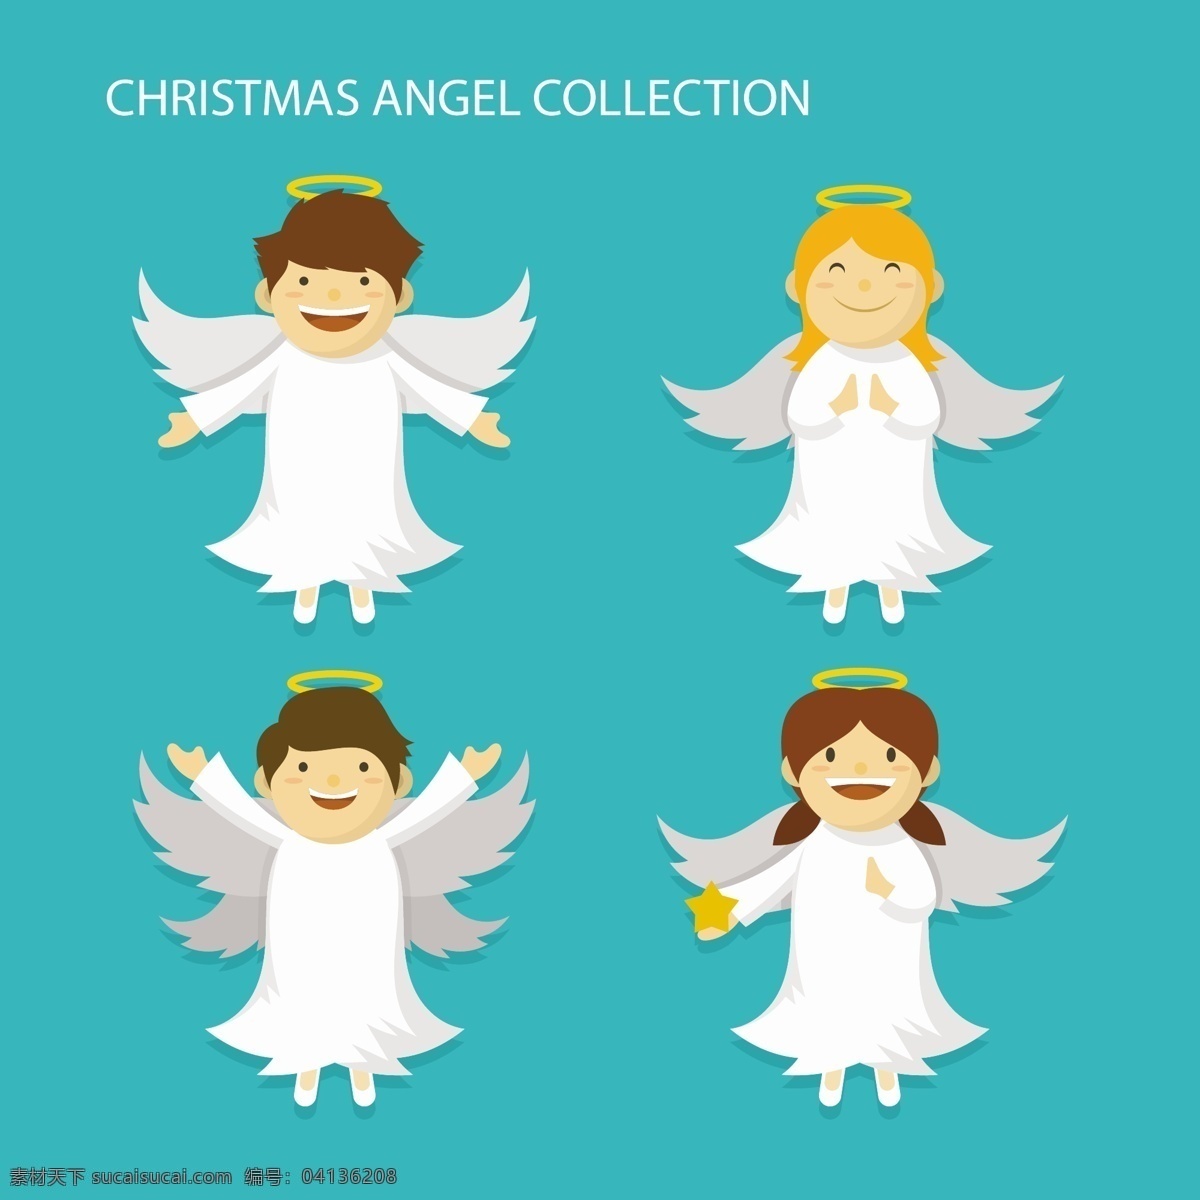 卡通 可爱 圣诞 天使 卡通天使 可爱圣诞天使 人物 圣诞天使